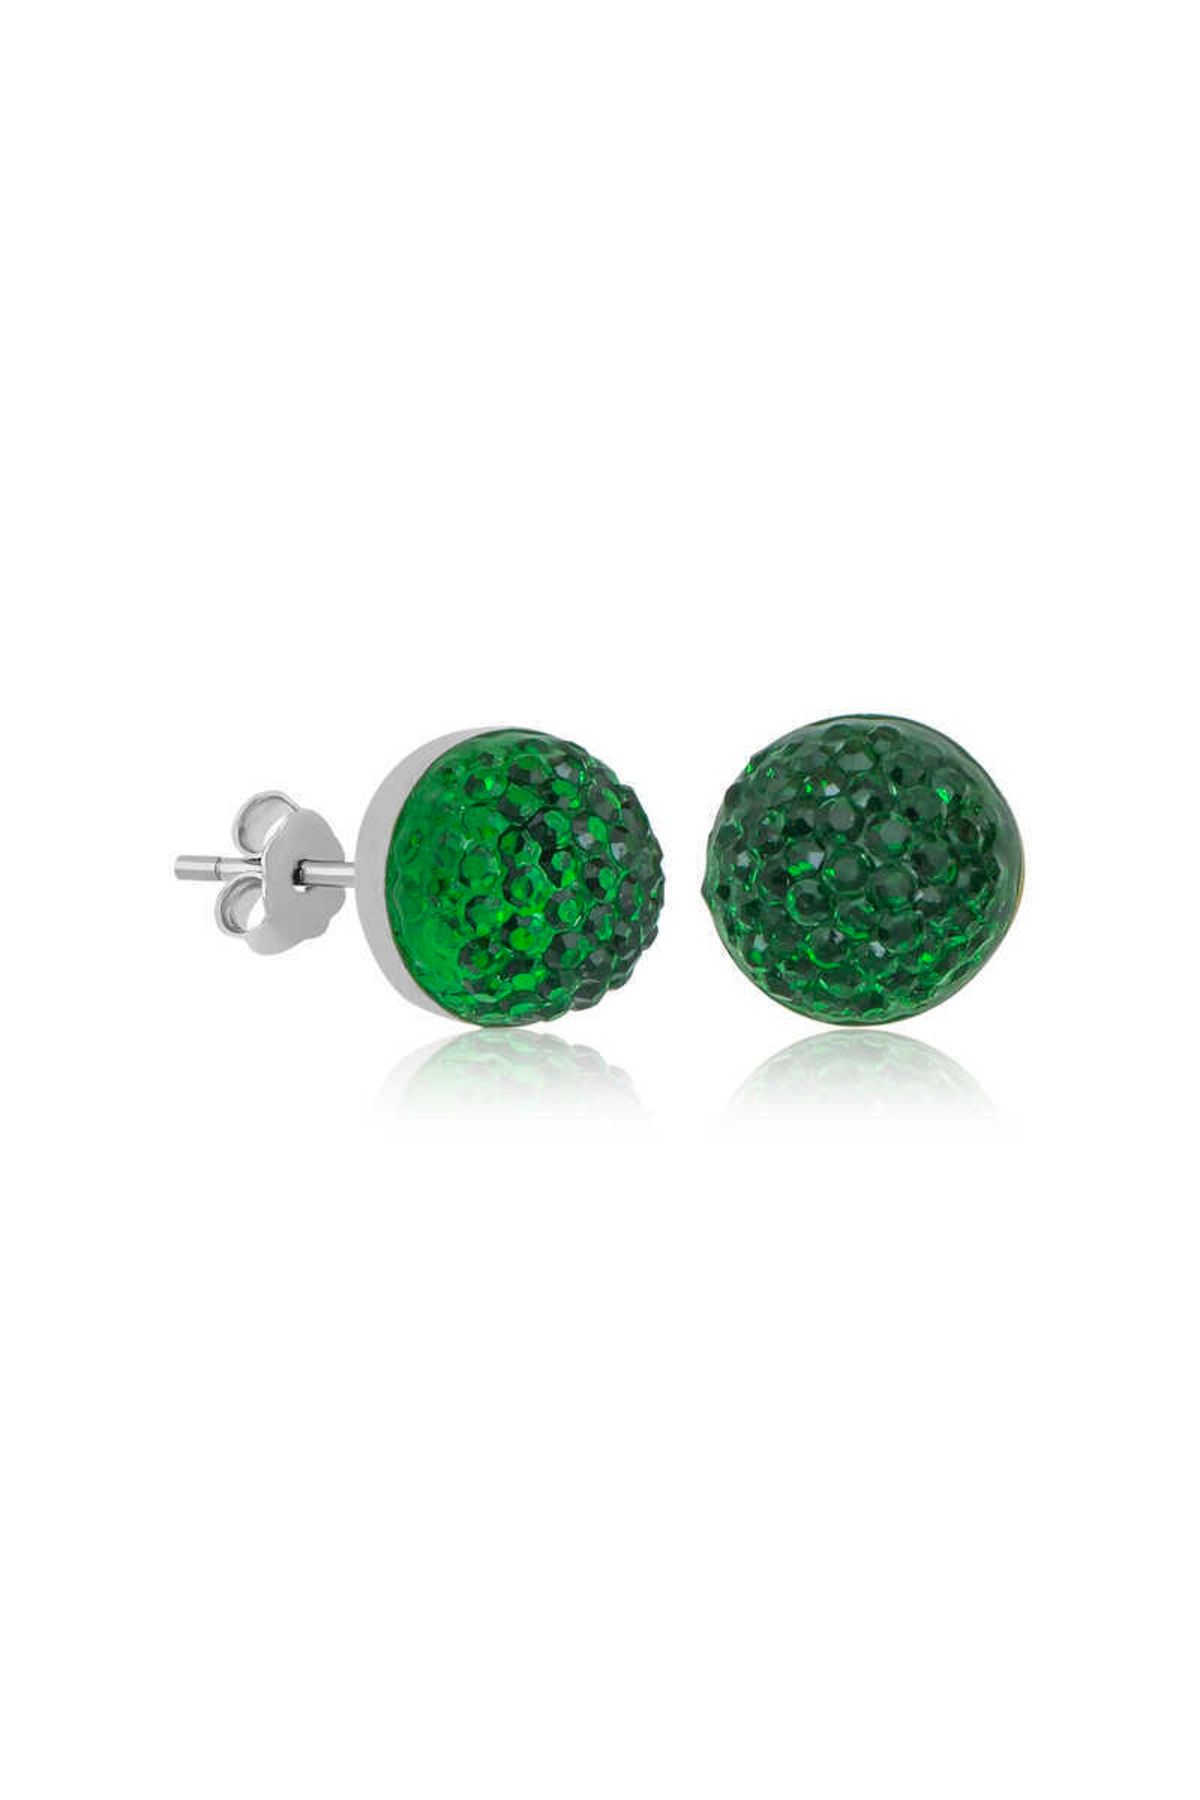 Gumush Selenavm & Gümüş Yeşil Kristal Çivili Kadın Küpe & Çivili Küpeler & Kadın Küpeleri & 925 Ayar